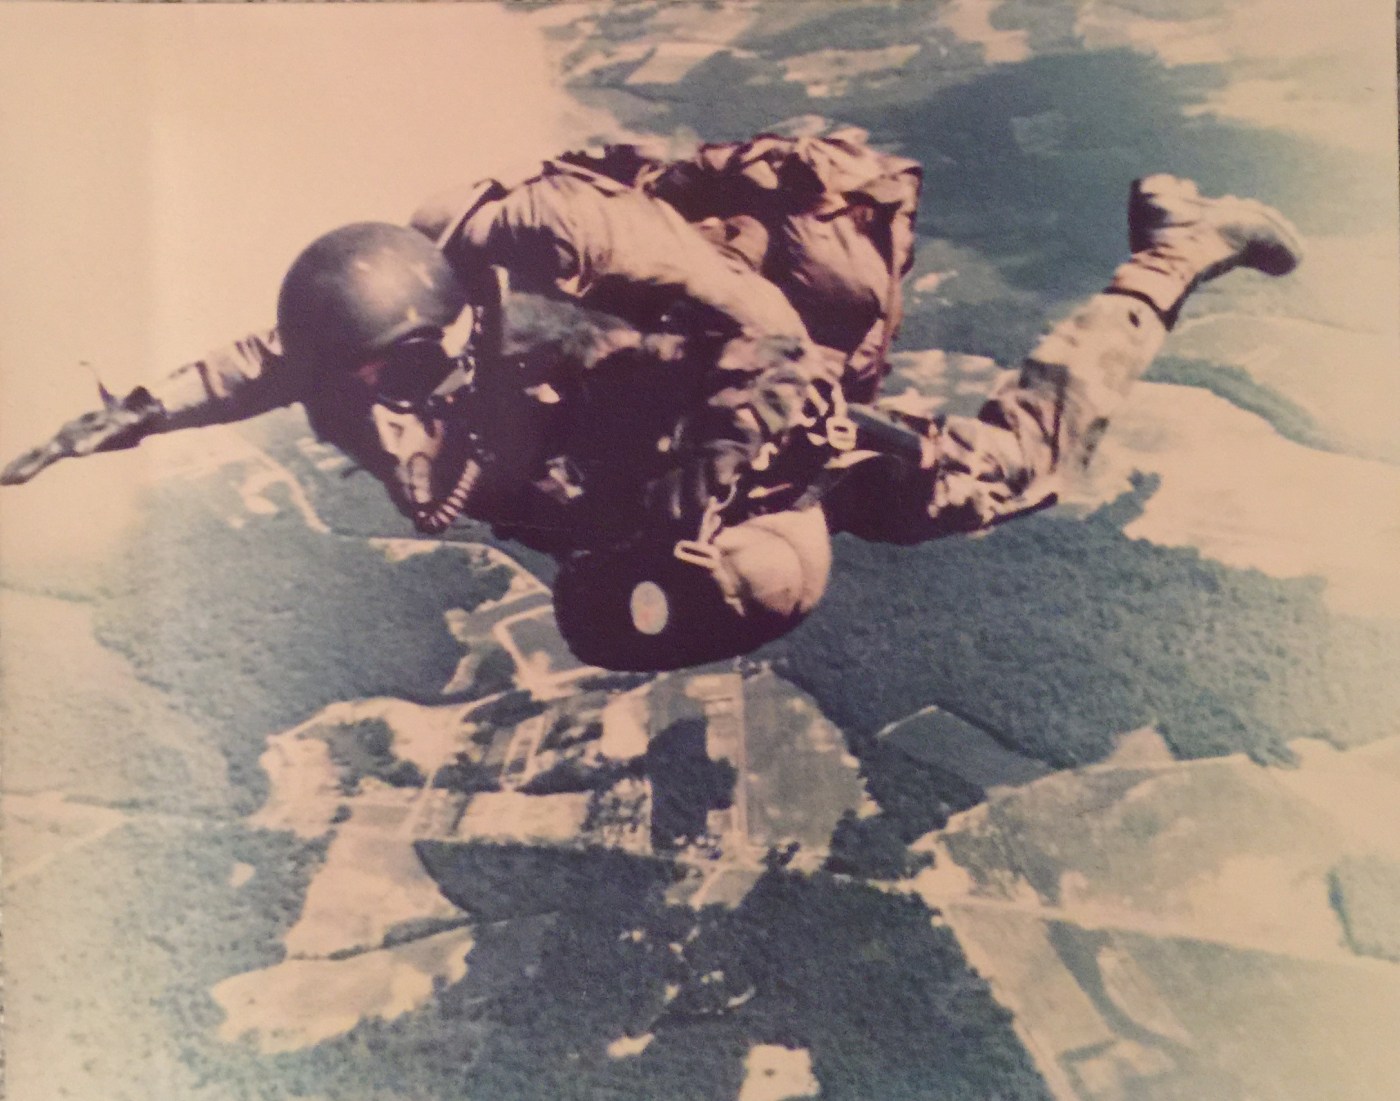 Mark Christianson performs a parachute jump.